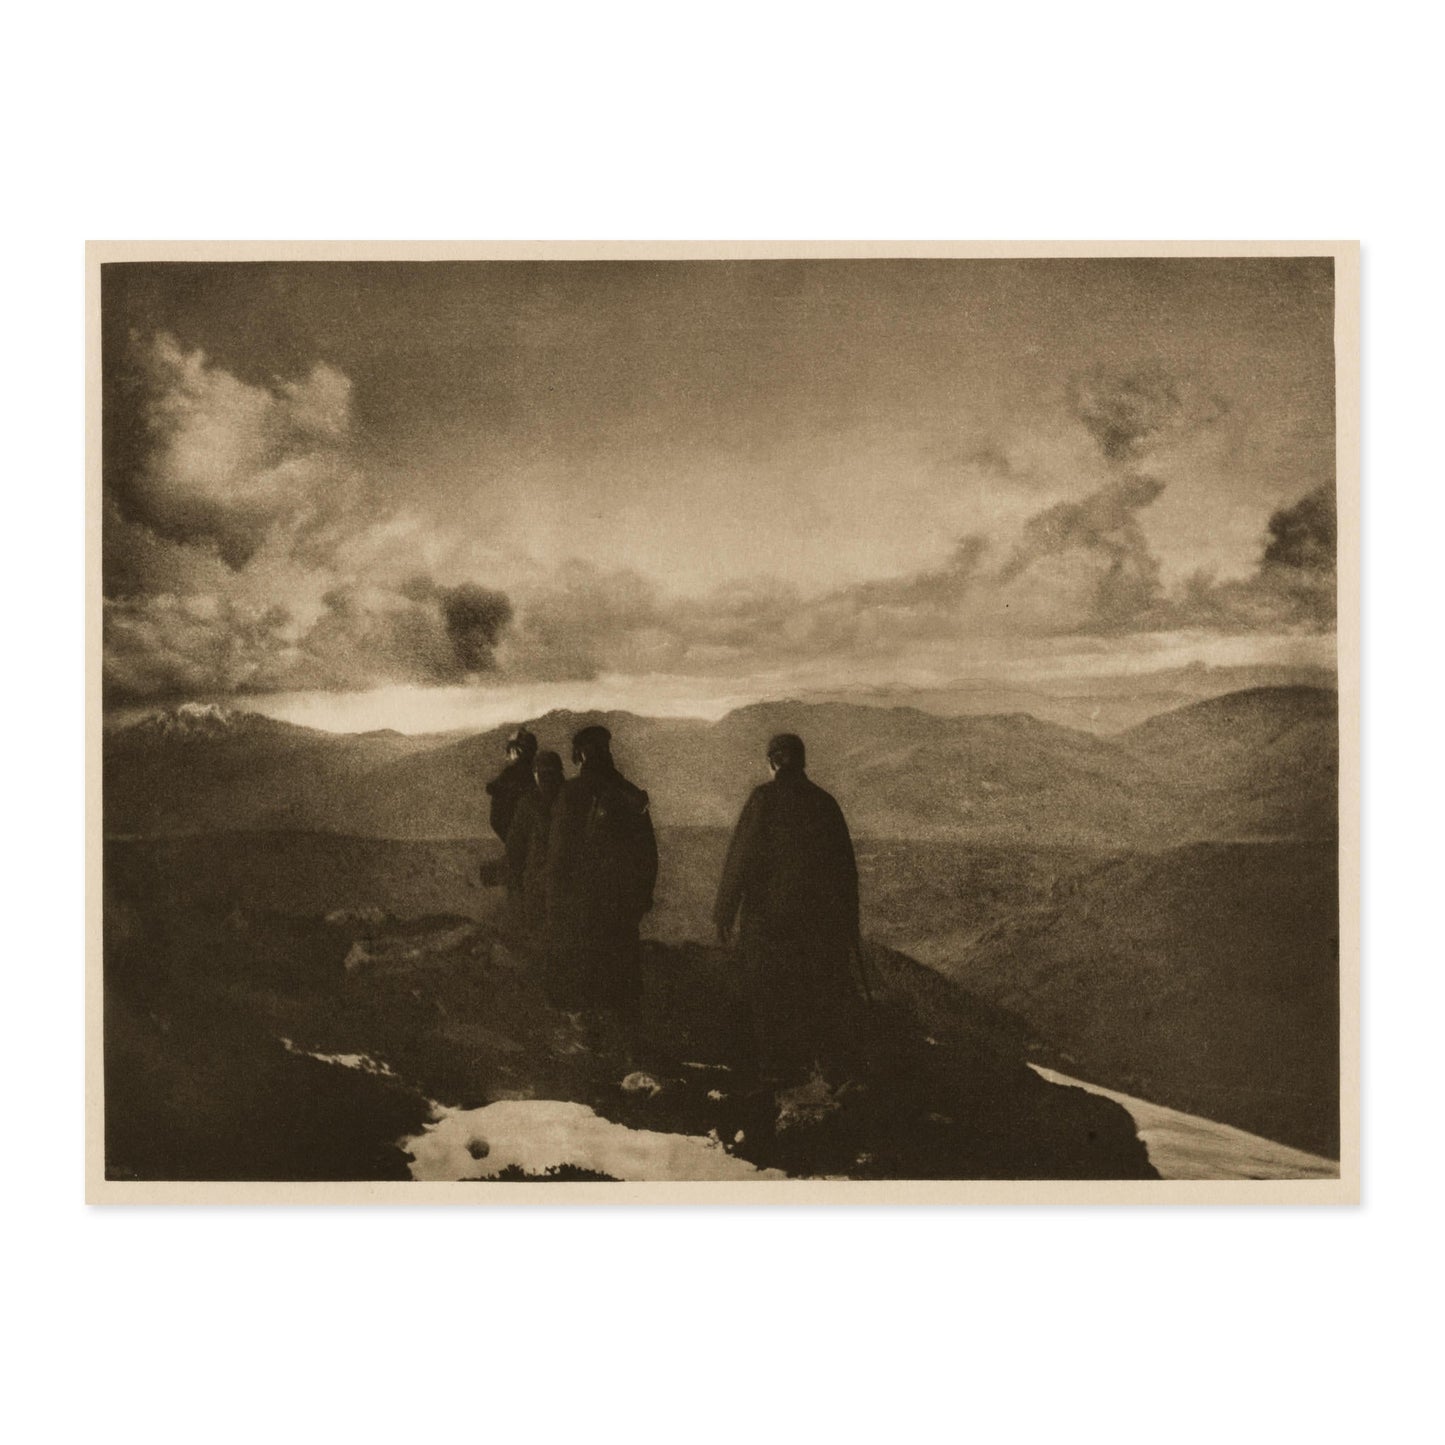 James Craig Annan, The Dark Mountains 1904